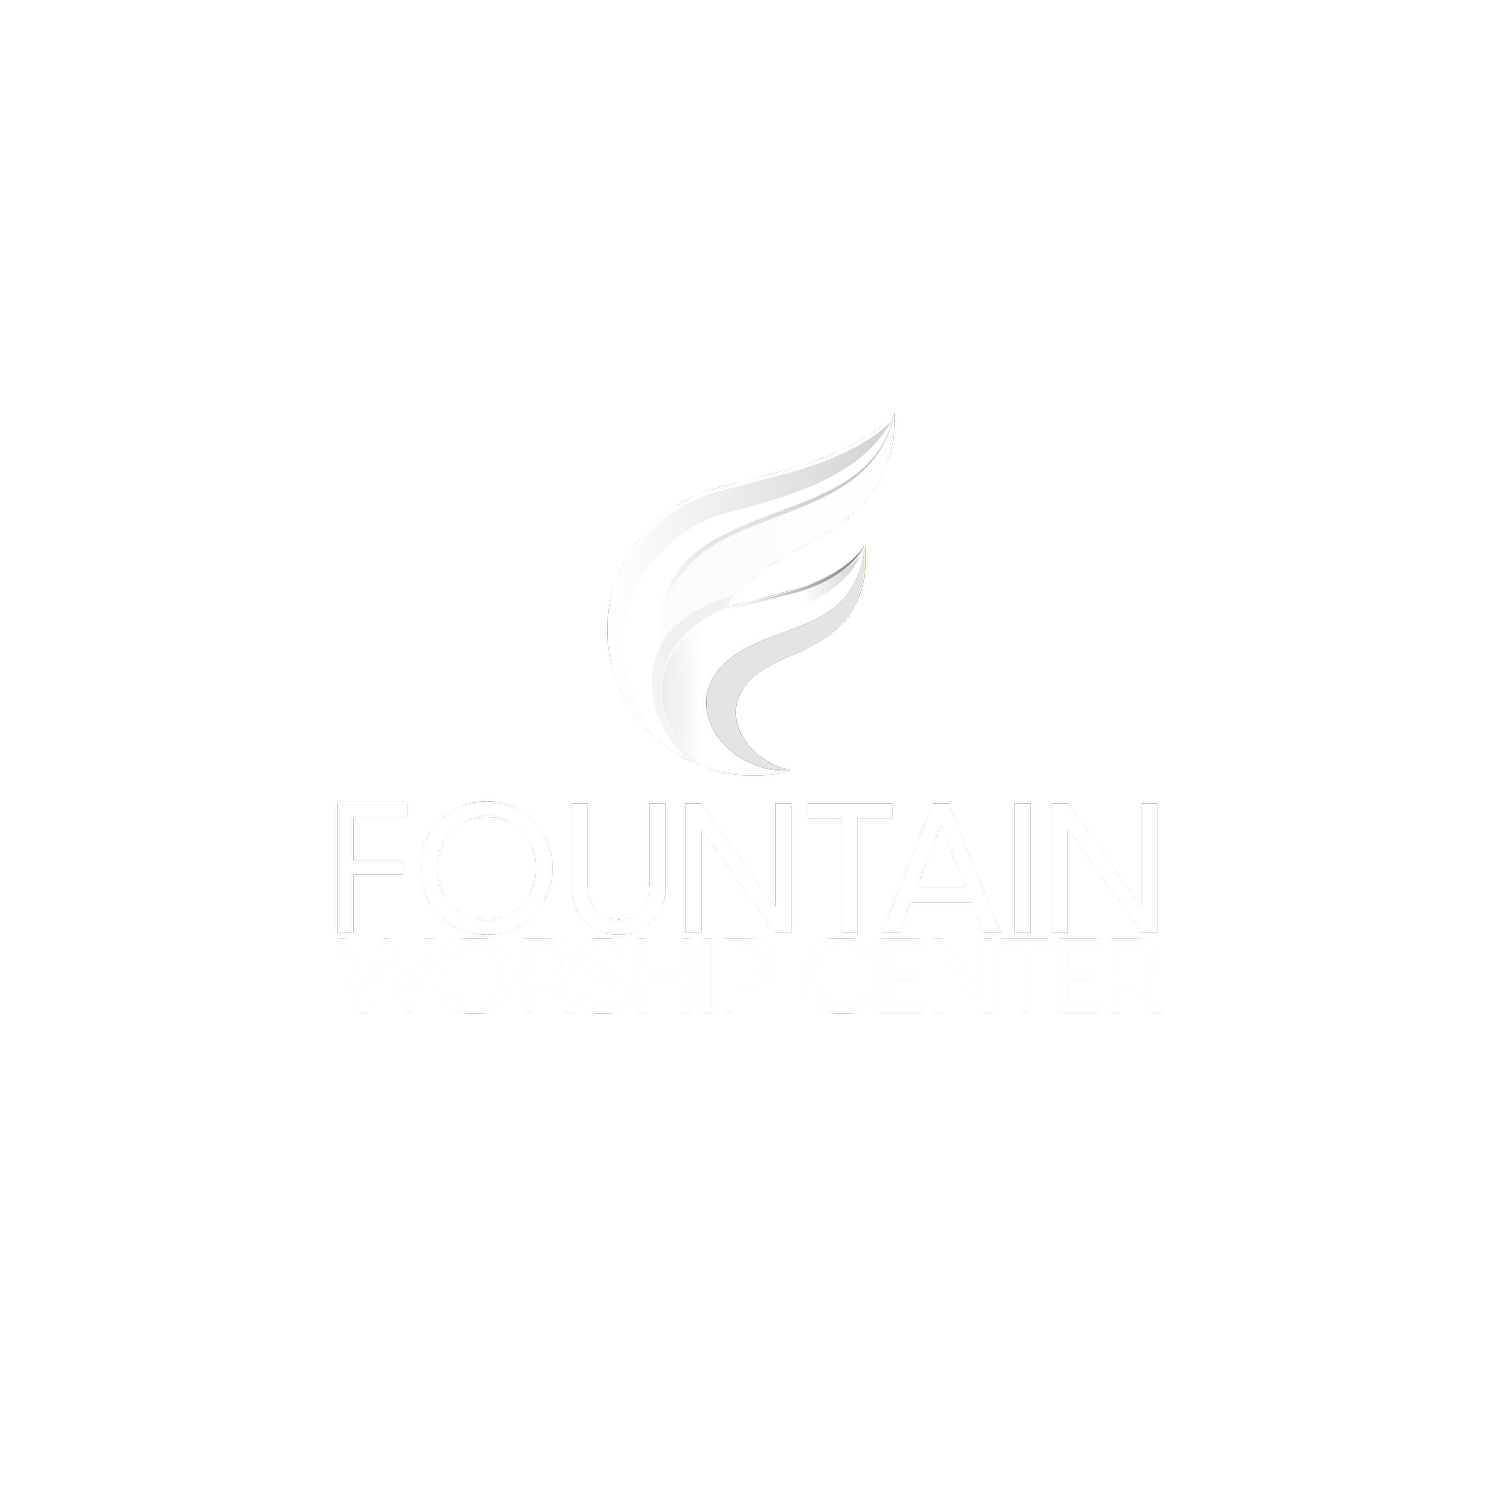 Fountain Worship Center